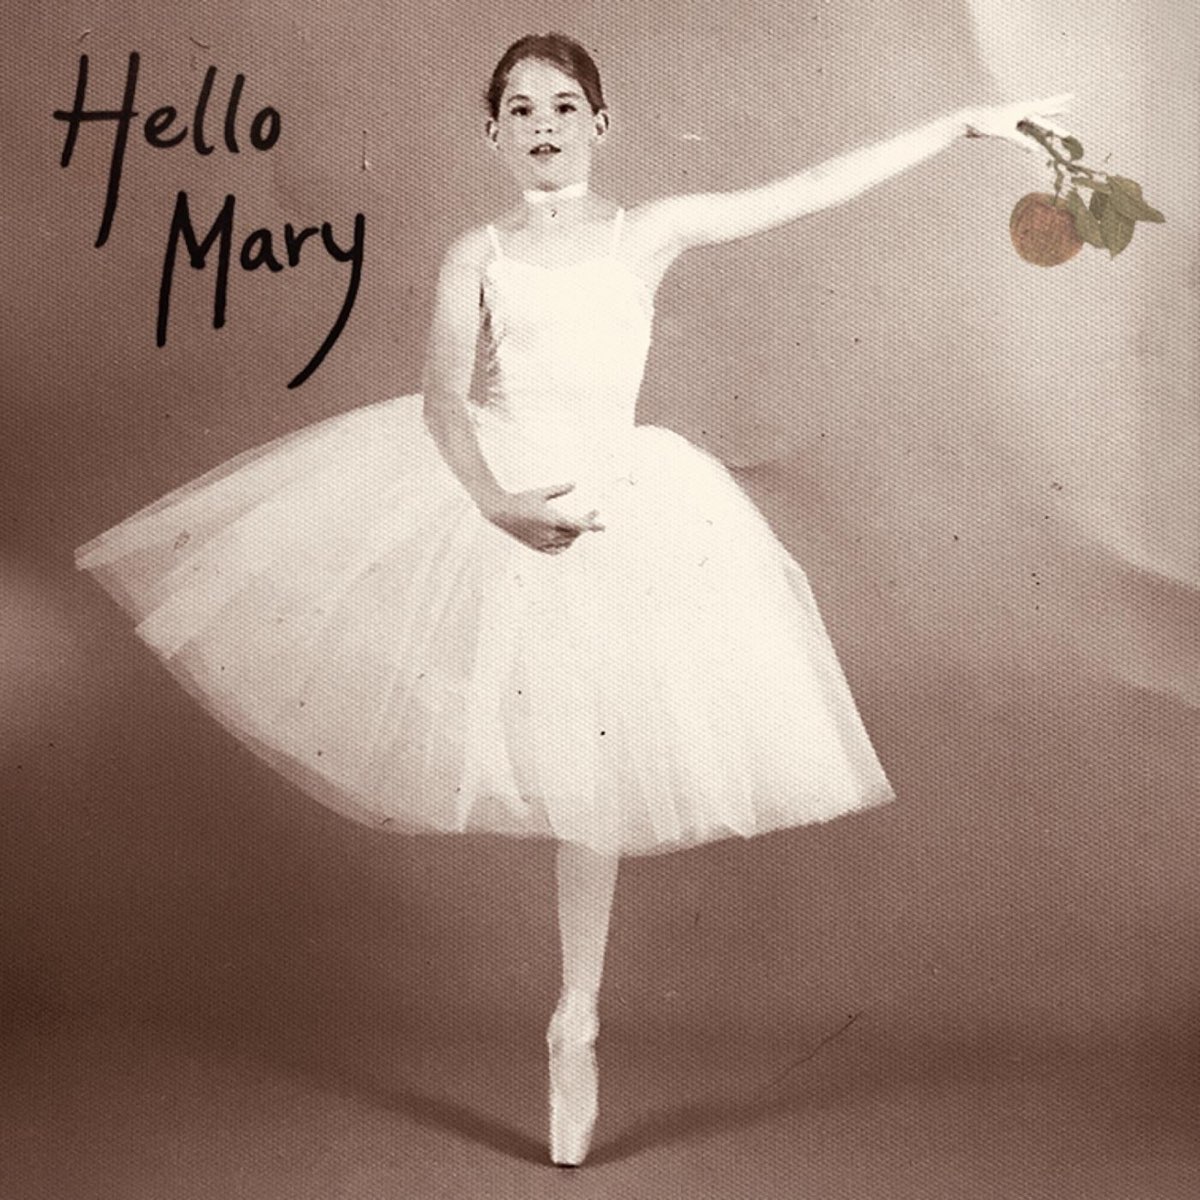 Mary apple. Hello Mary Tom and i go. Hello Mary loga wektorny jpg.